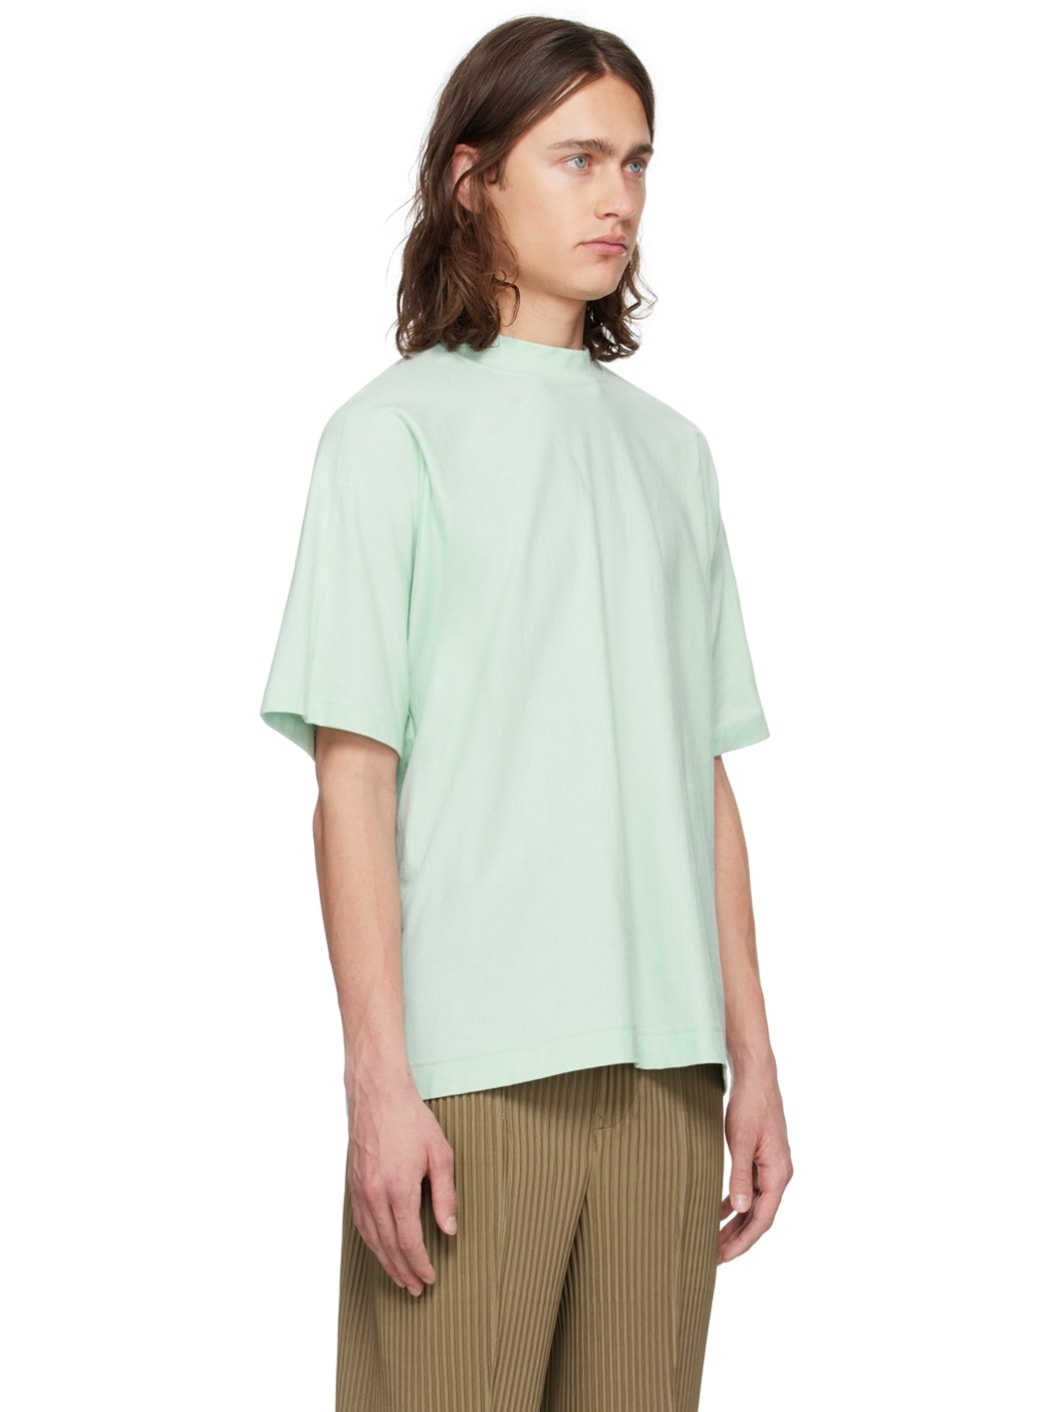 Green Release-T 2 T-Shirt - 2